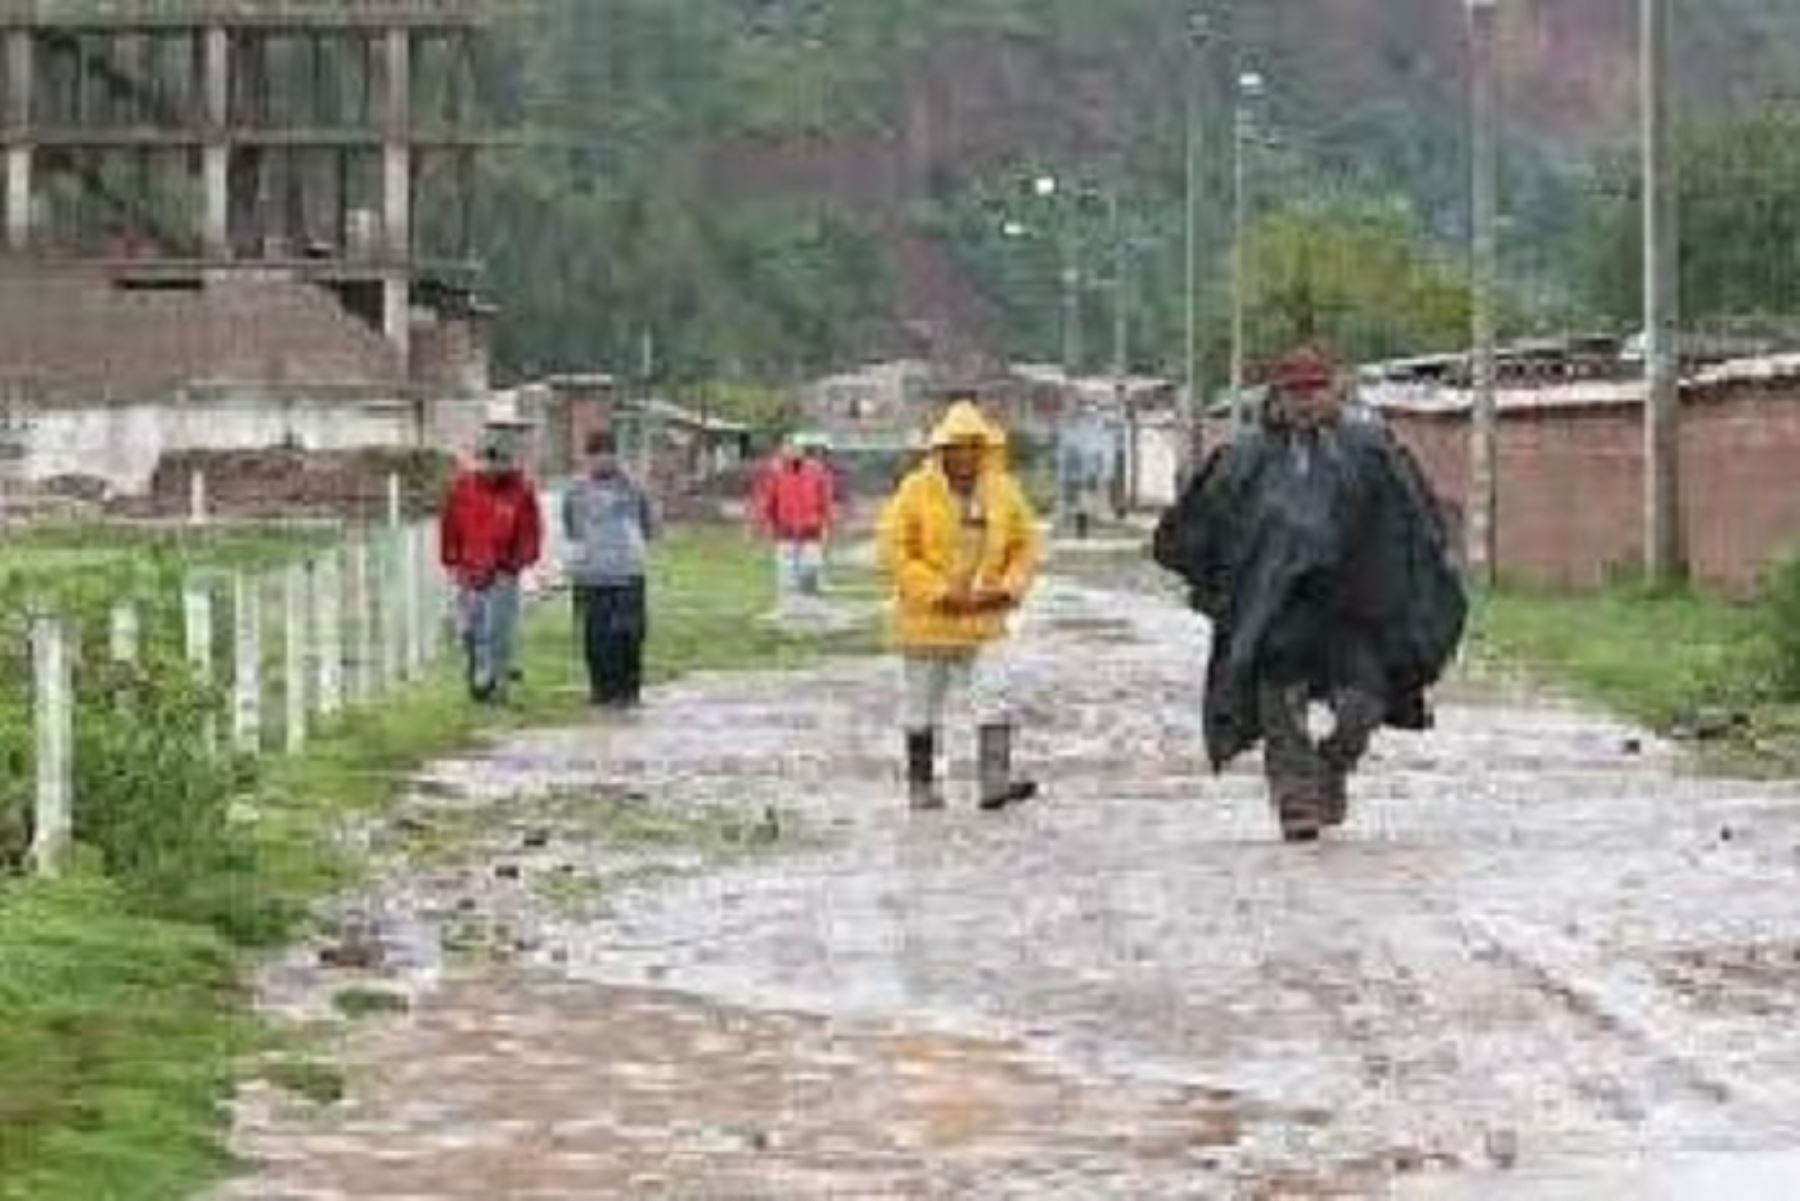 Distrito puneño de Pisacoma, en la provincia de Chucuito, región Puno, soportó un día “extremadamente lluvioso” al registrar un acumulado de 23.6 milímetros de agua en las últimas 24 horas.